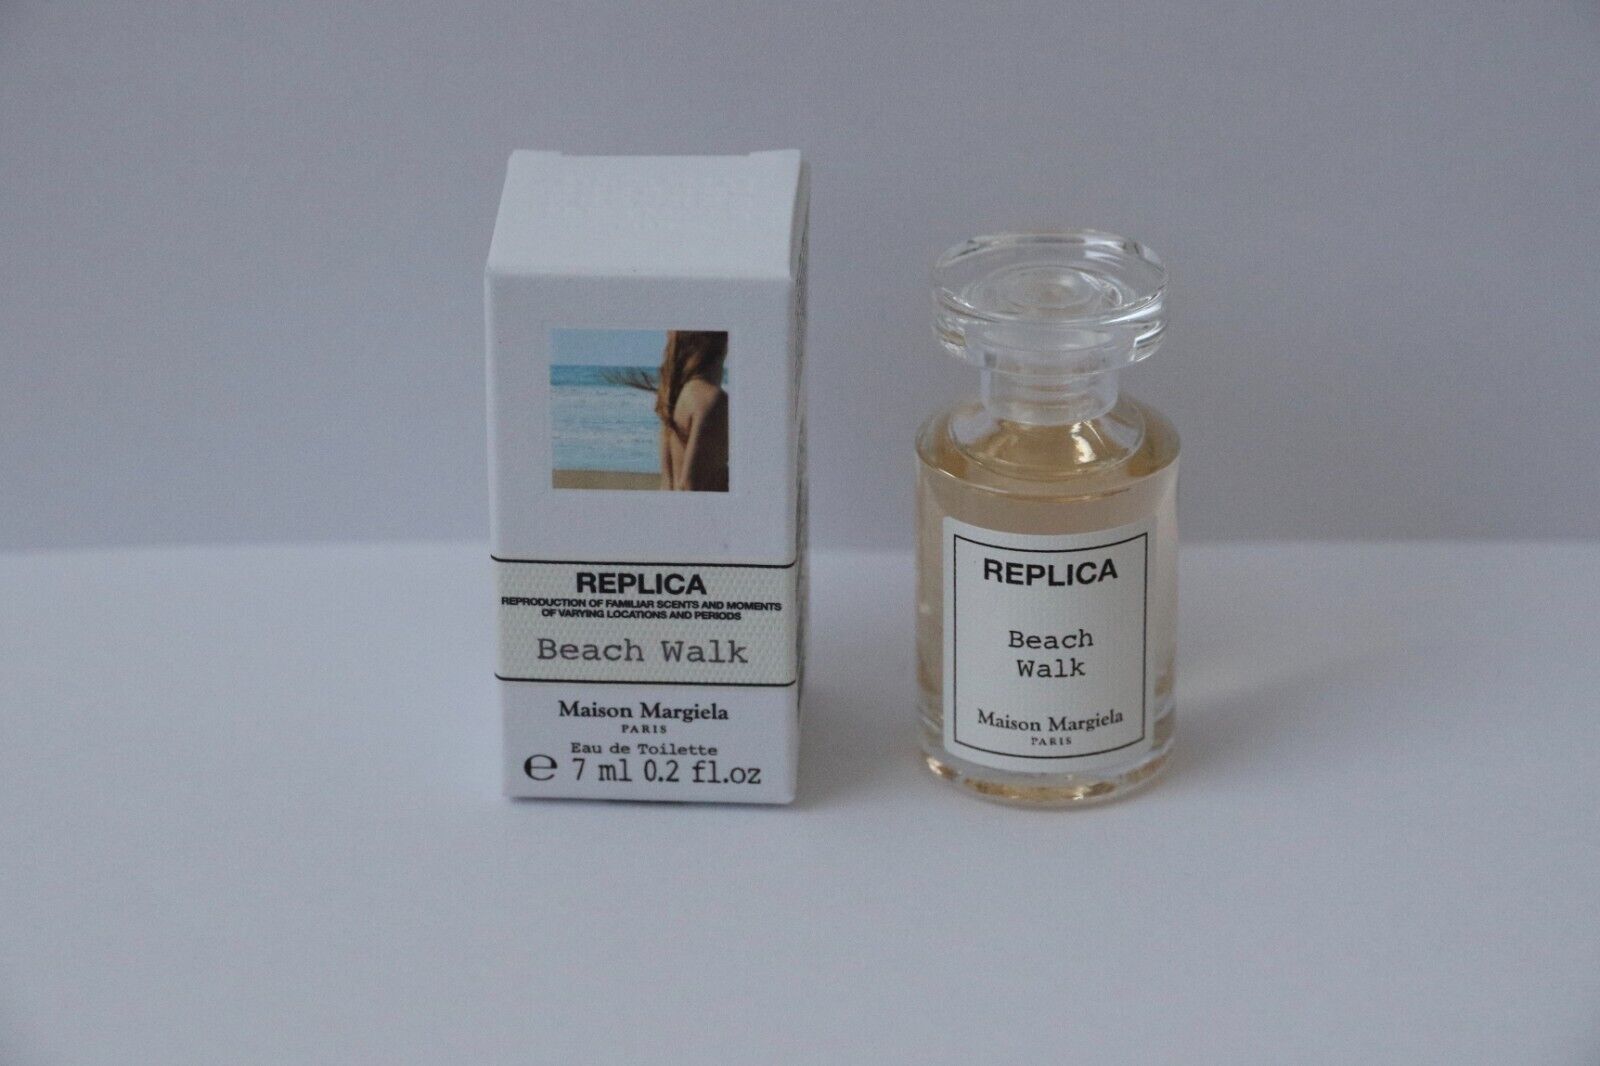 Replica Beach Walk Maison Margiela .2 oz Mini Perfume EDT Splash Eau de Toilette - $19.99